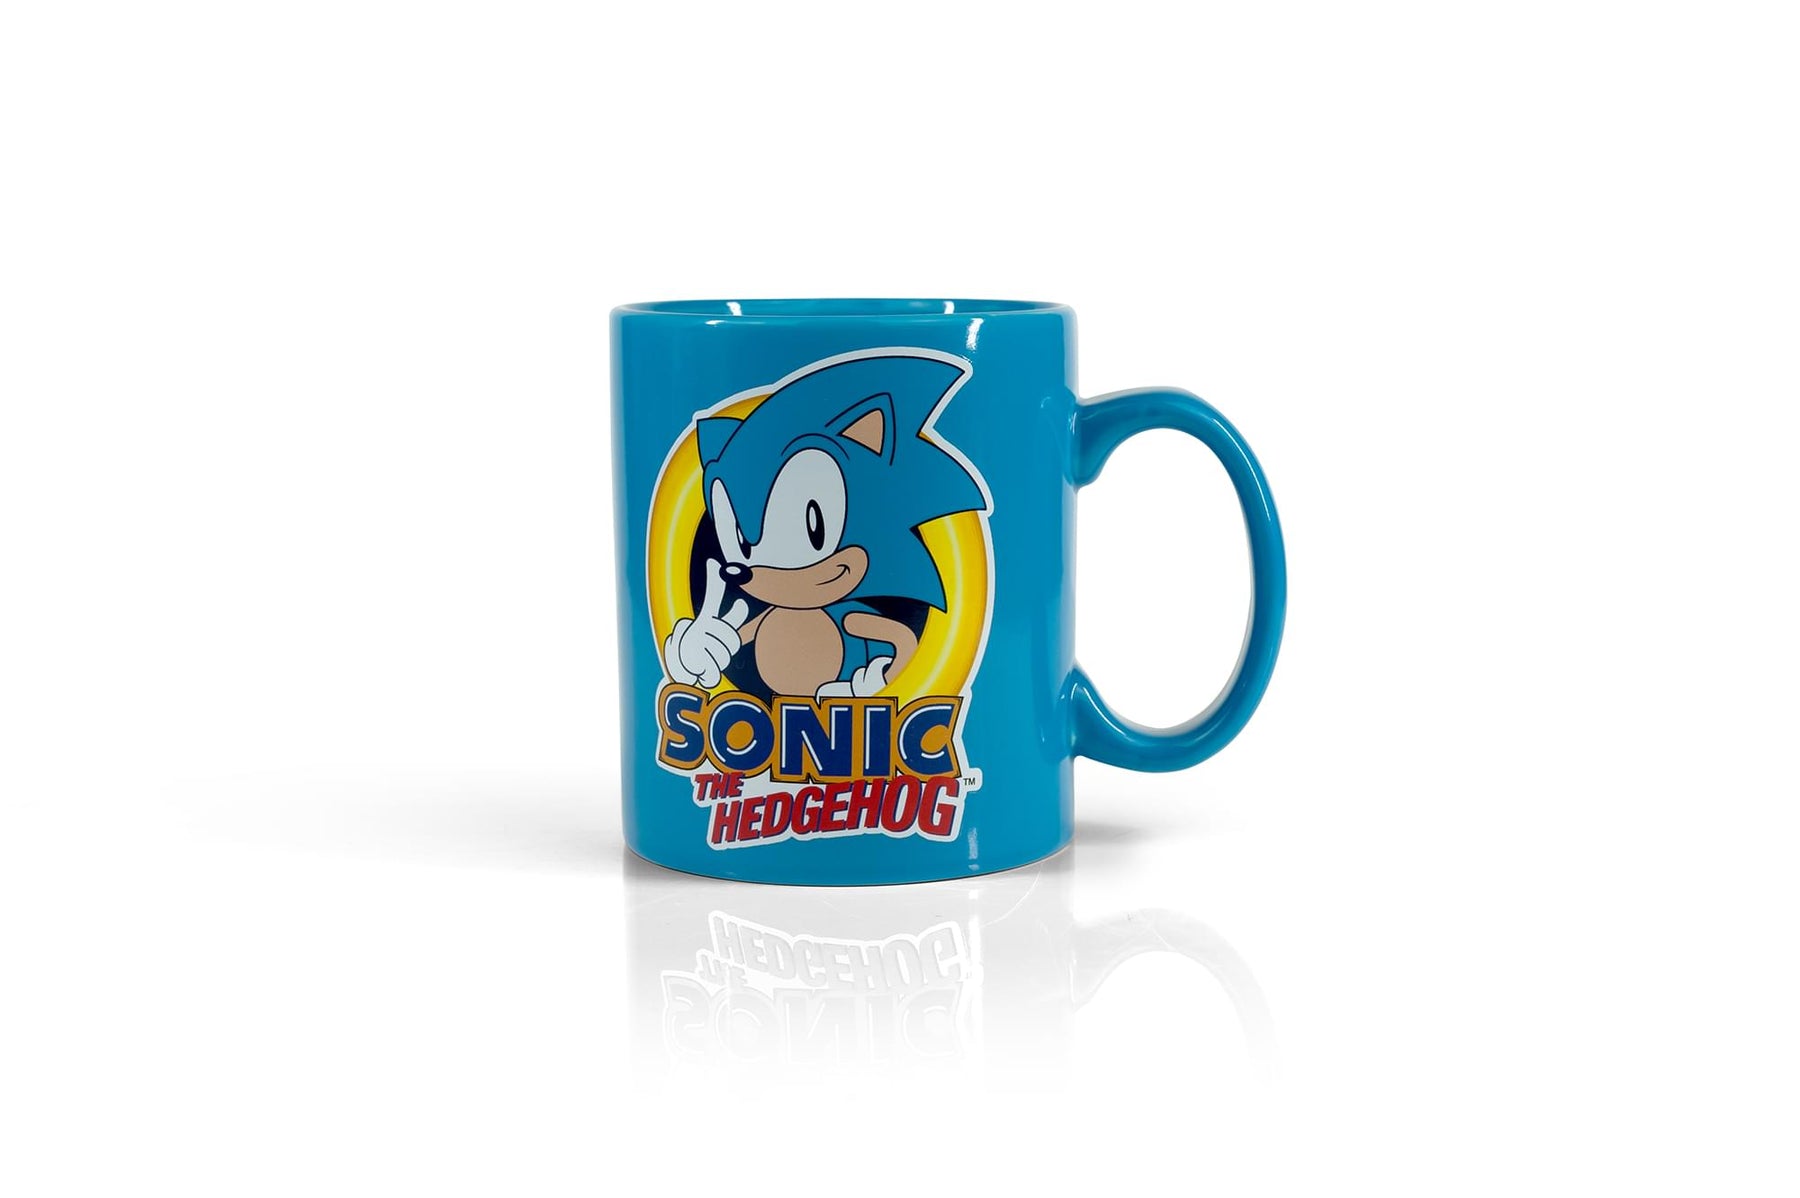 Sonic The Hedgehog Blue 16oz Ceramic Coffee Mug